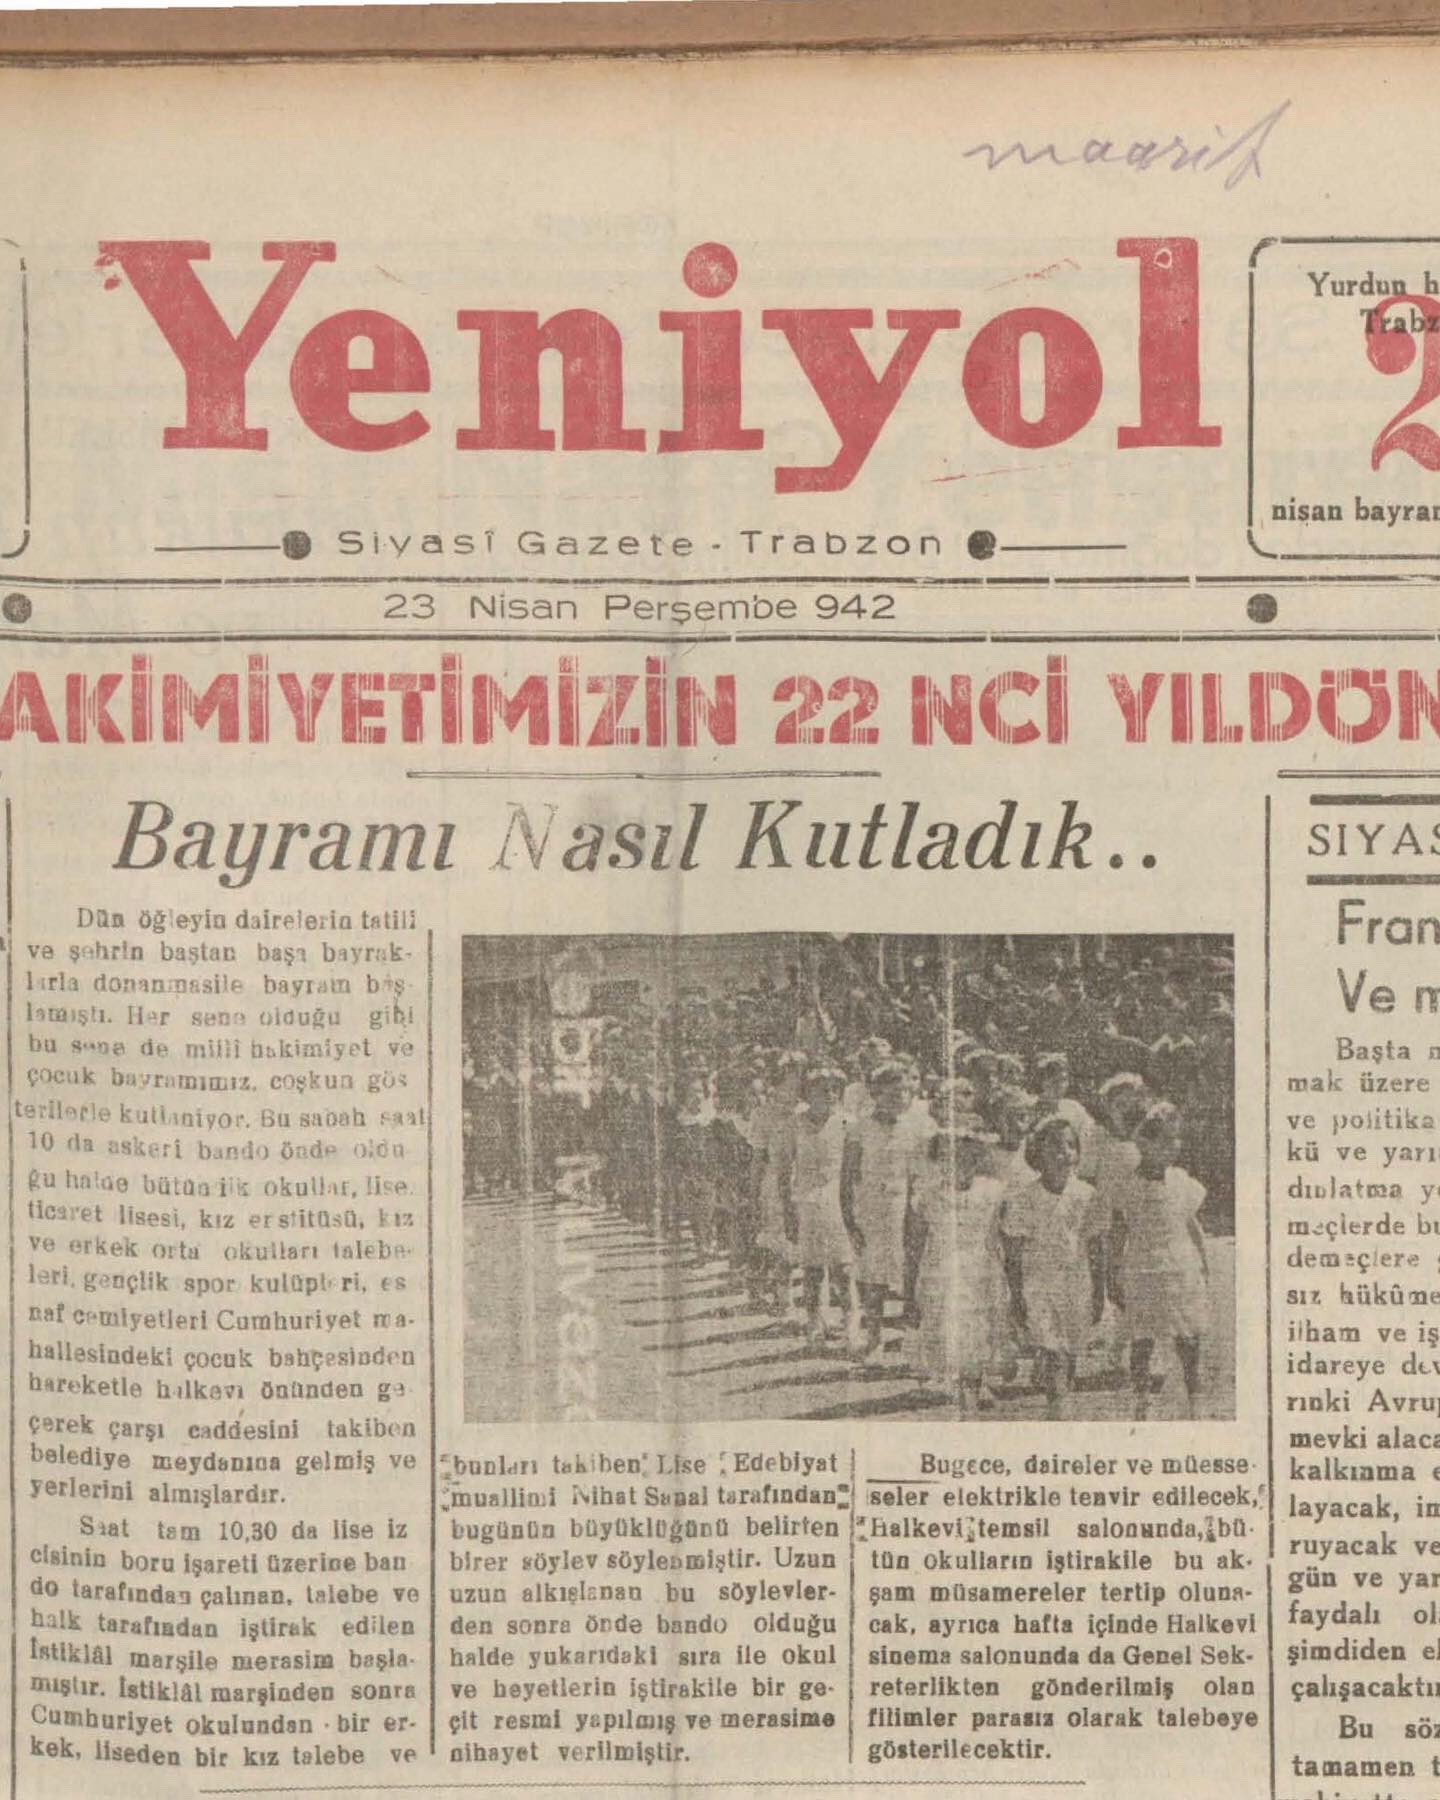 istanbul universitesi on twitter istanbul universitesi dijital gazete arsivi nden sectigimiz 23 nisan tarihli eski gazete mansetleri tarihe taniklik ediyor ve 100 yil oncesinde oldugu gibi bu yil da coskuyla umutla kutlanmaya devam